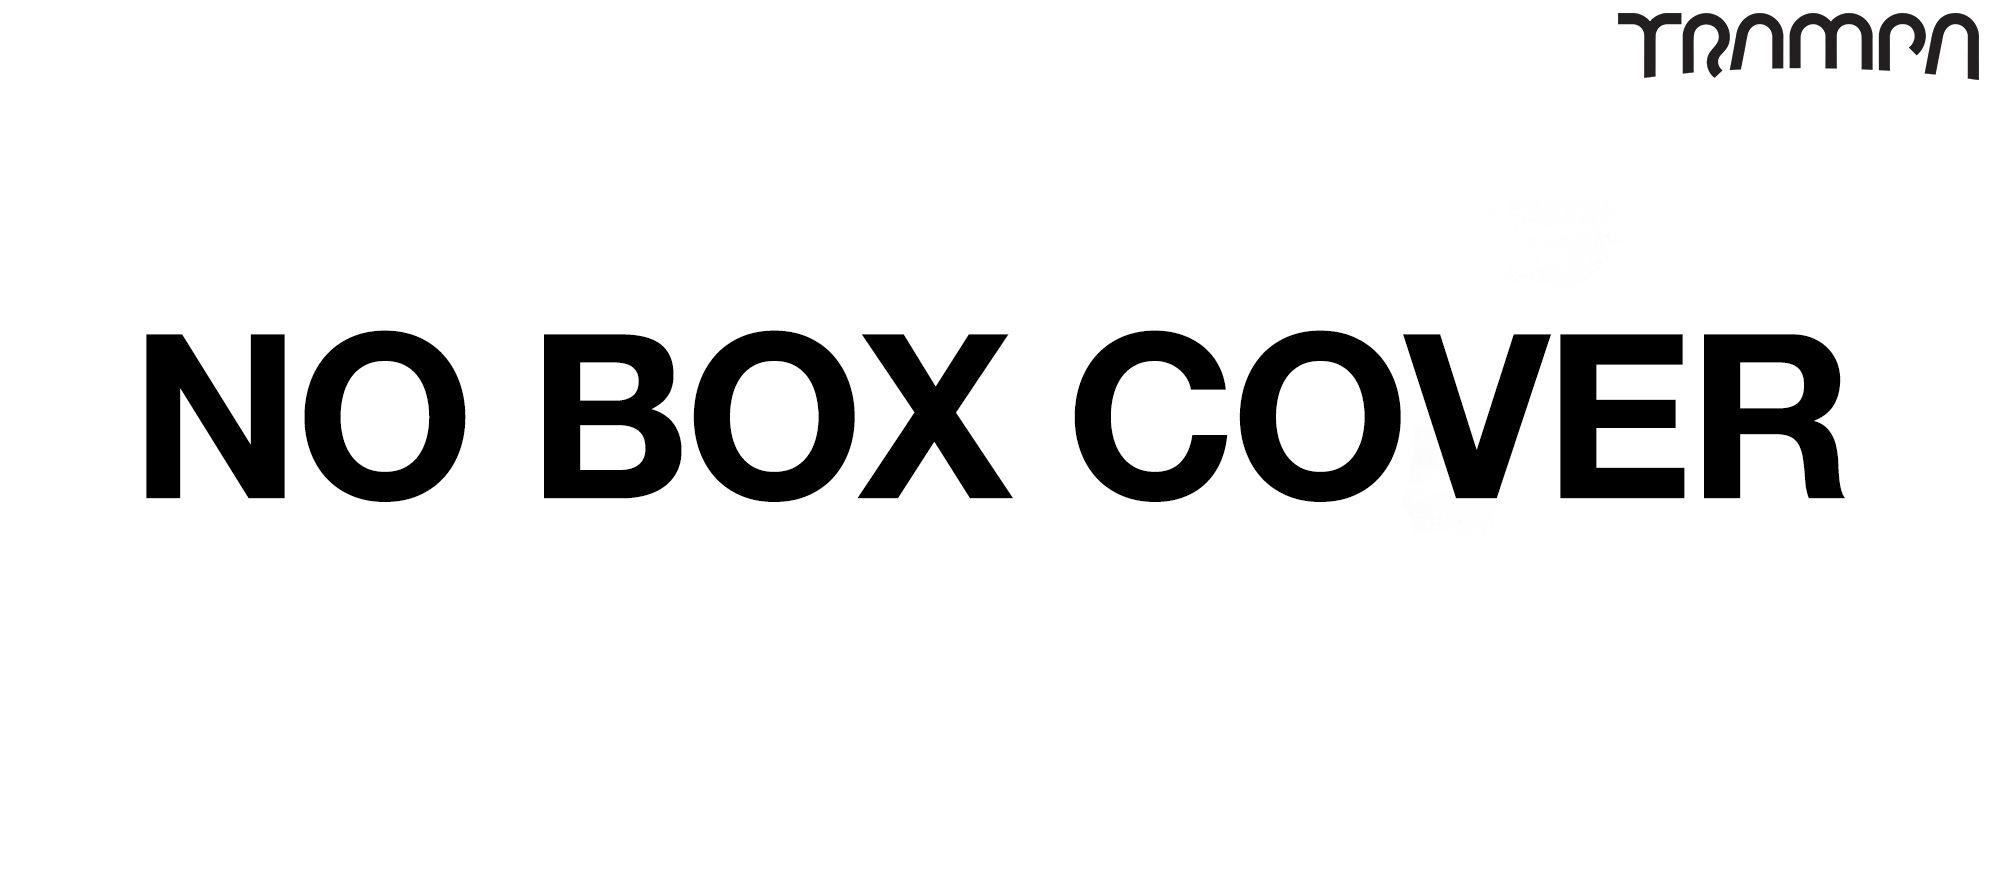 NO Box cover 